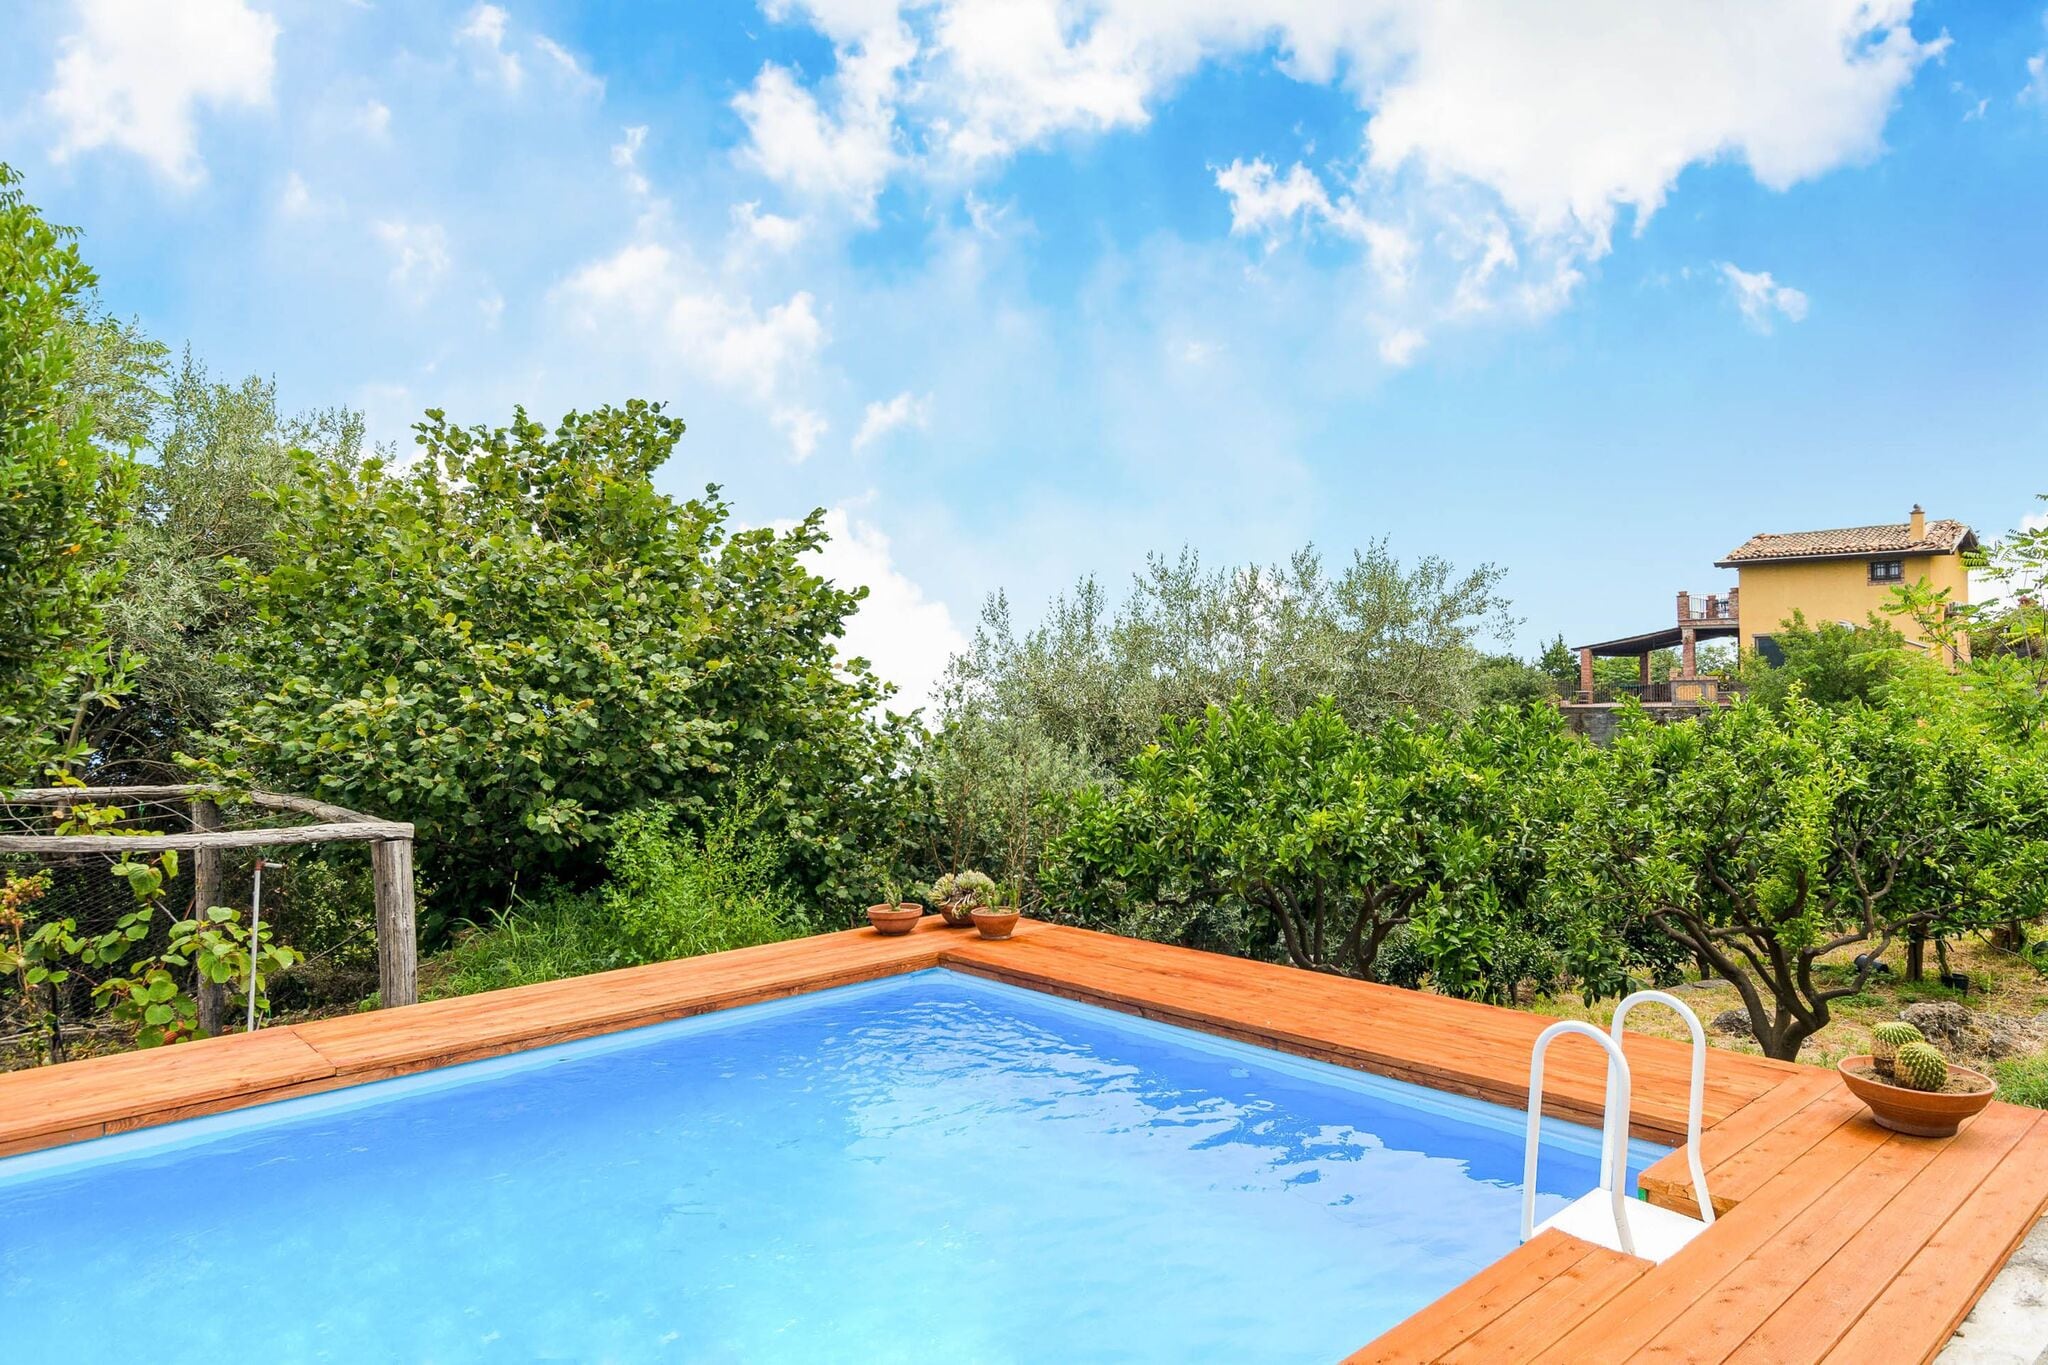 Faszinierende Villa in Mascali mit Swimmingpool